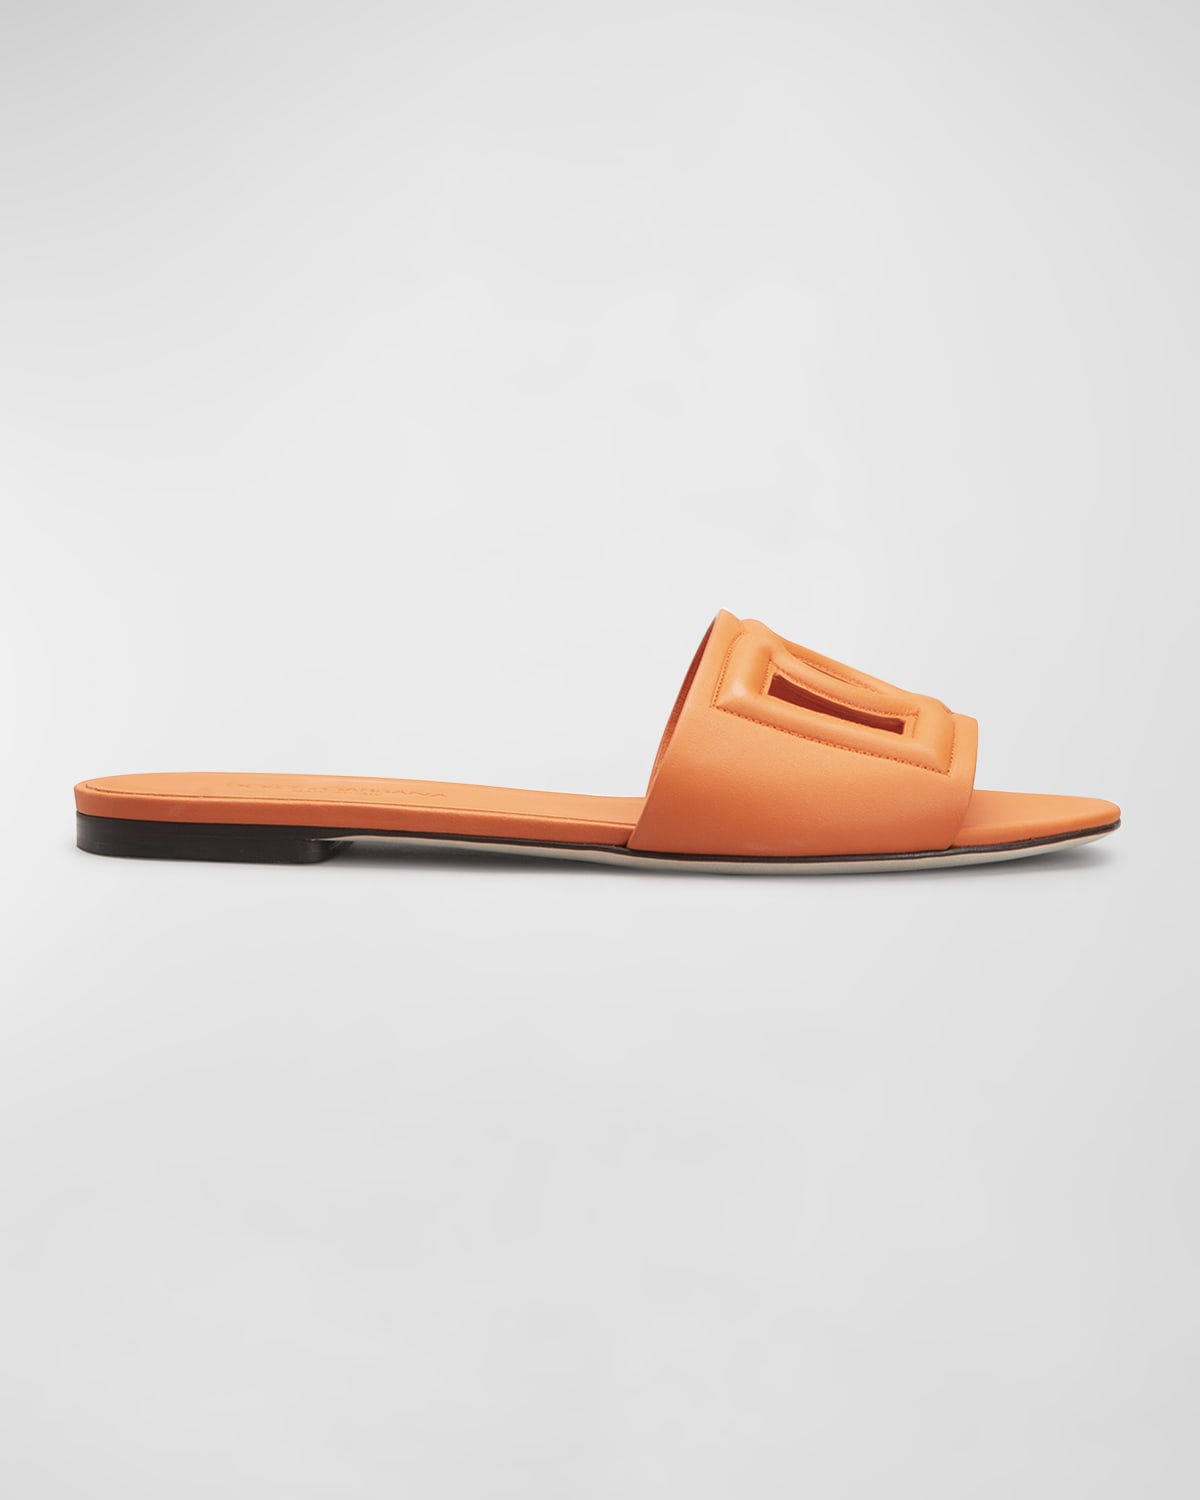 Designer jelly orange decor sandals for ladies